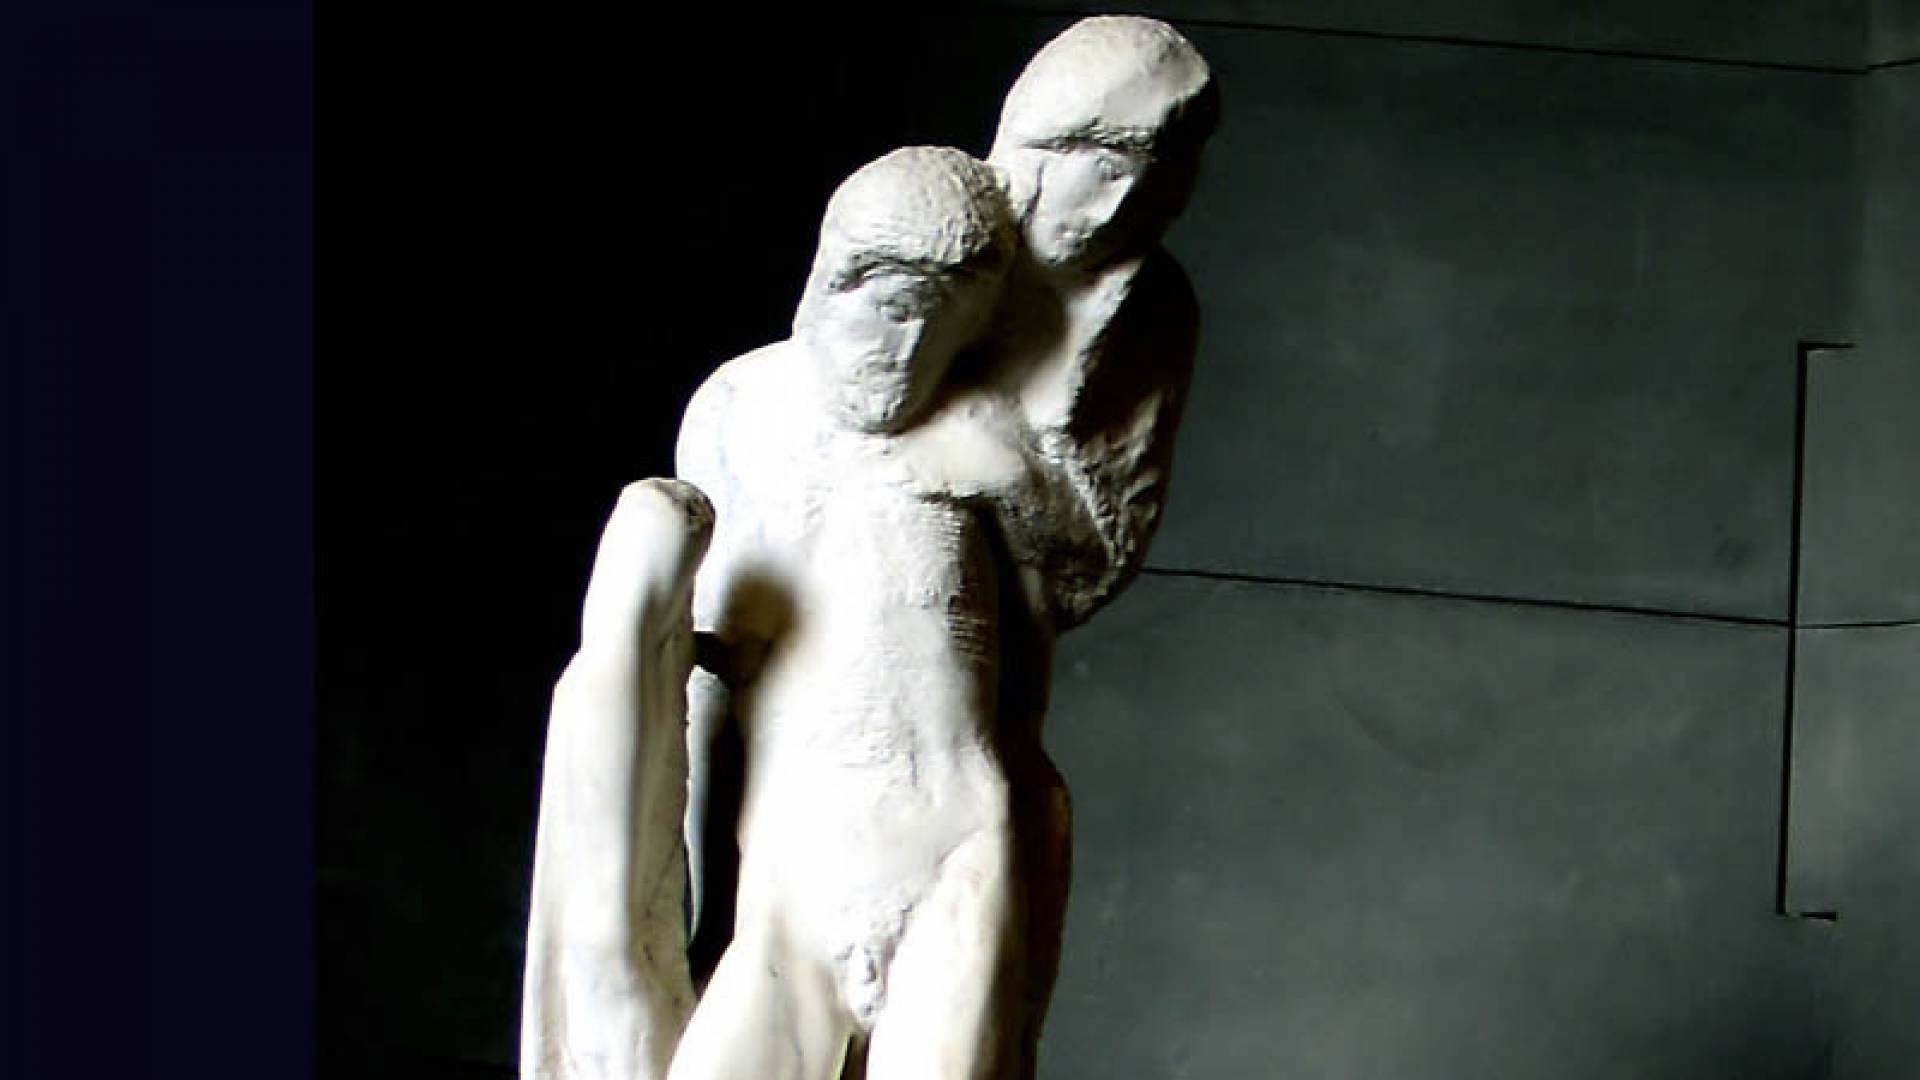 SFORZA CASTLE, Pieta' Rondanini - Michelangelo